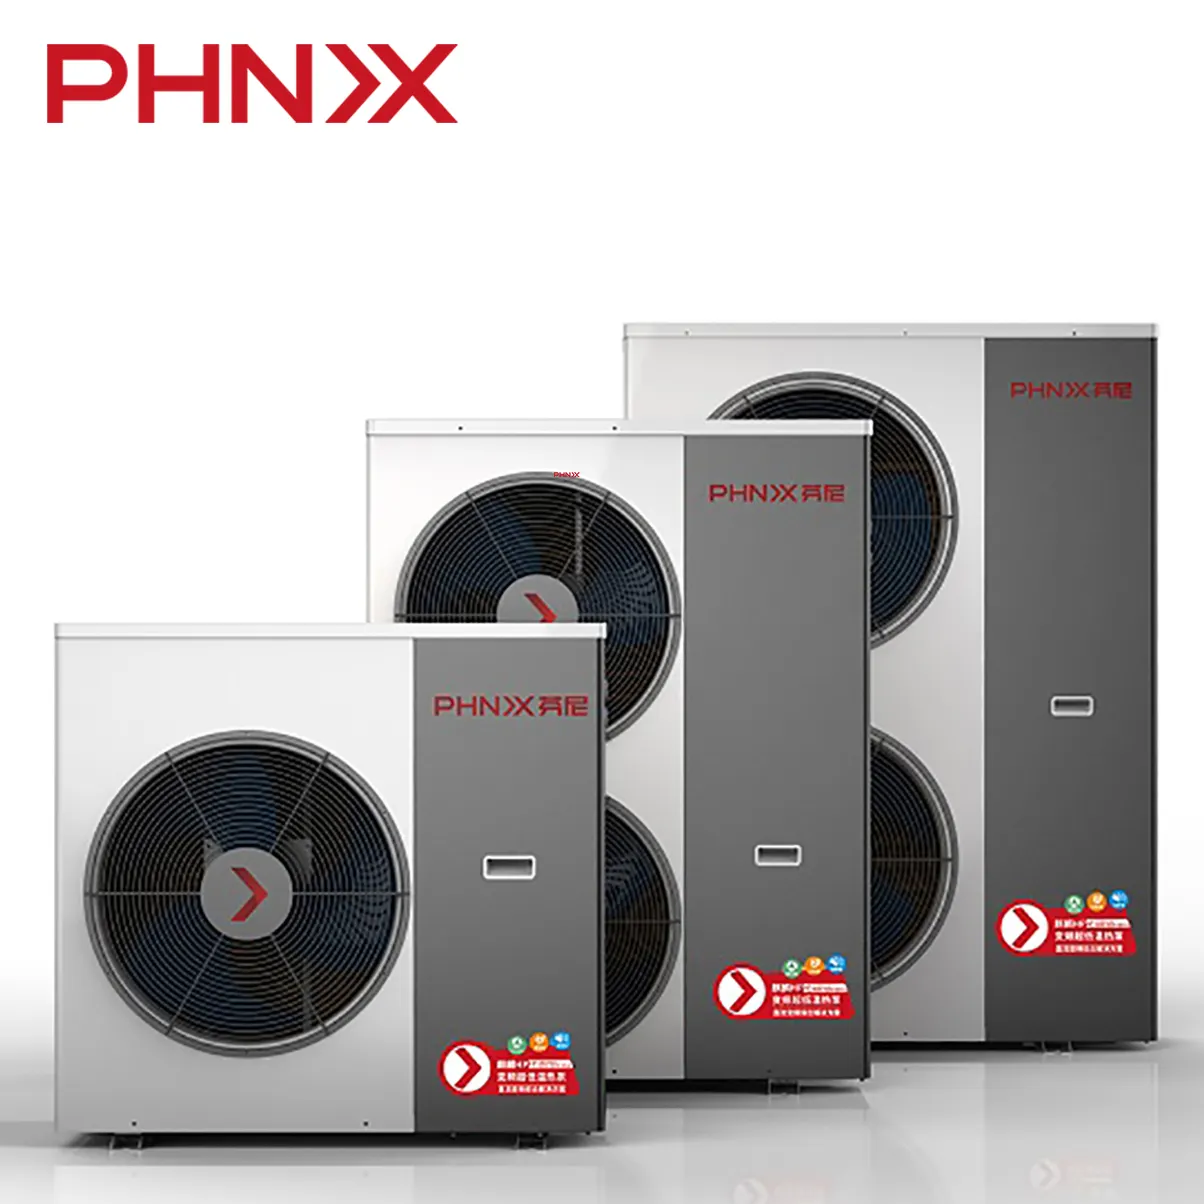 PHNIX HP14 2020 pompa di calore sistema di riscaldamento + pompa ad acqua per il riscaldamento